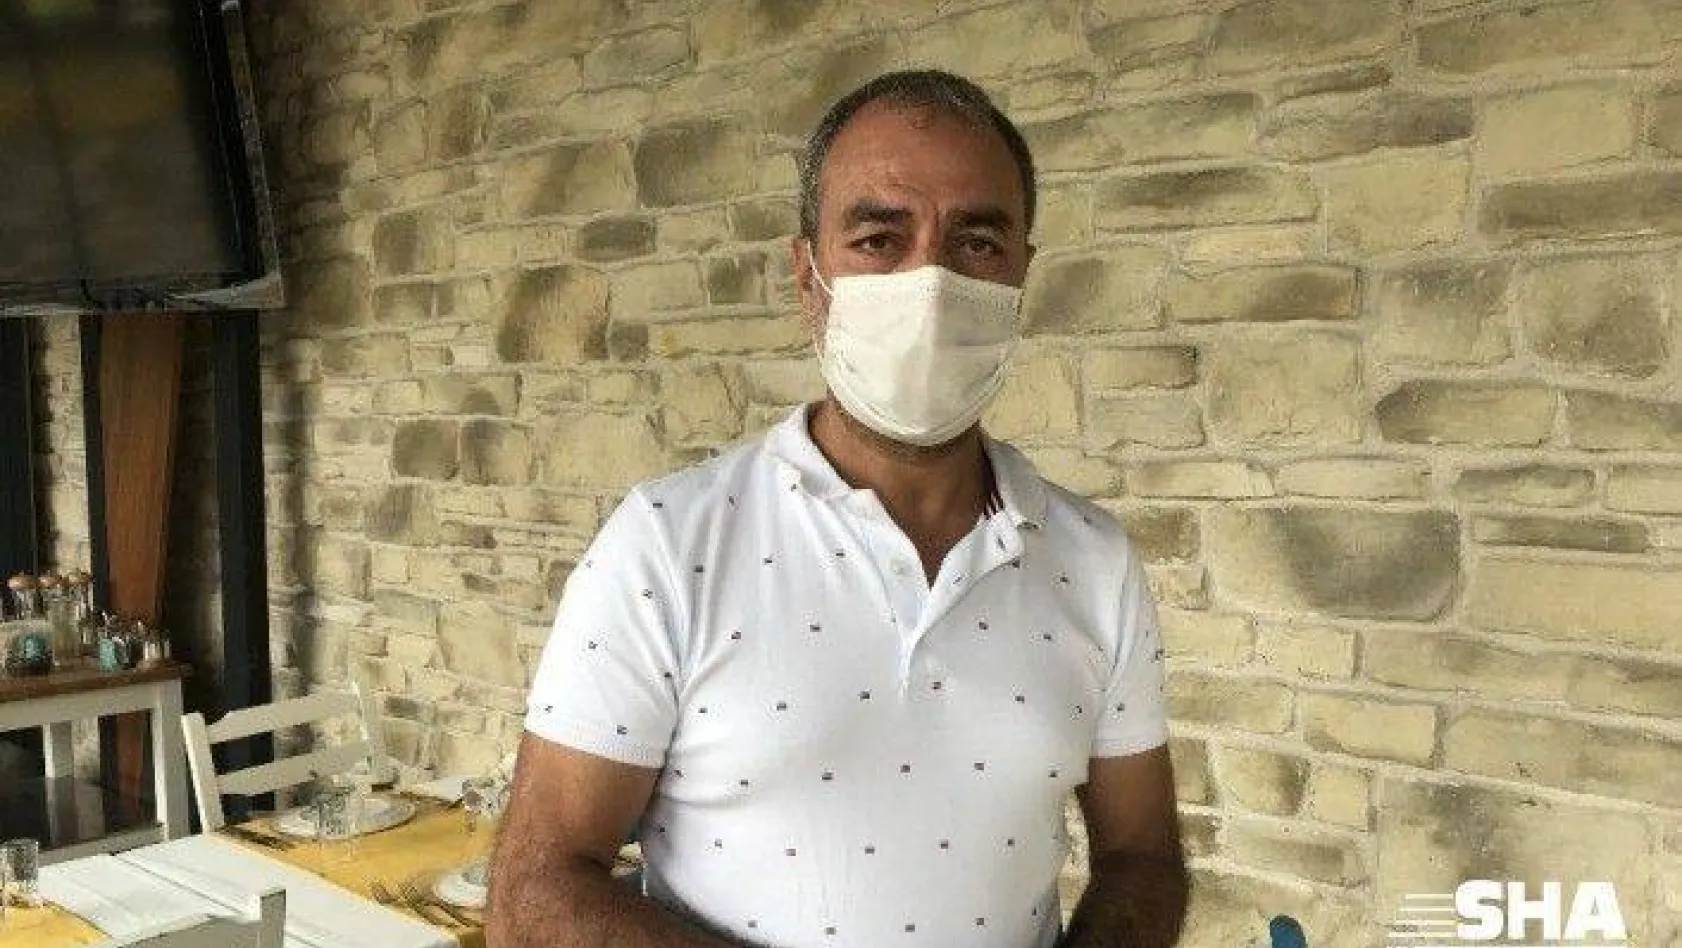 CHP'li İbrahim Kaboğlu'nun aracına taş atan şahıs: 'Alkolün etkisiyle oldu, yapmamam gereken bir hataydı'